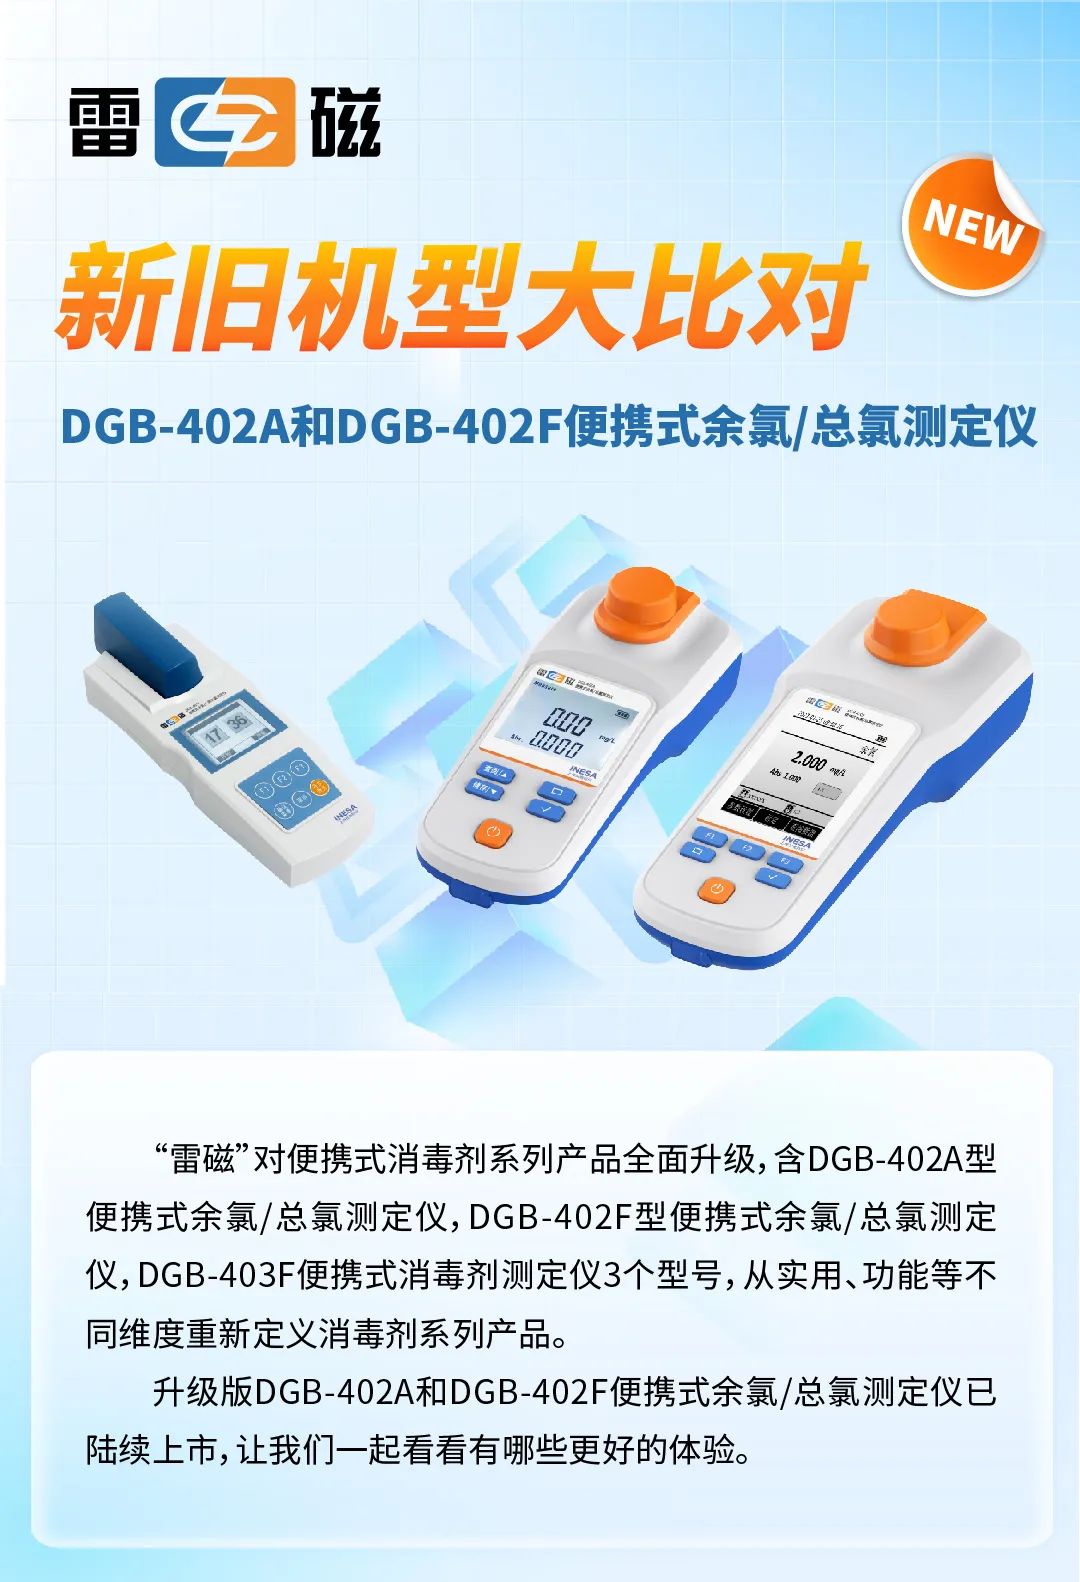 雷磁新旧机型大比对——DGB-402A和DGB-402F型便携式余氯/总氯测定仪